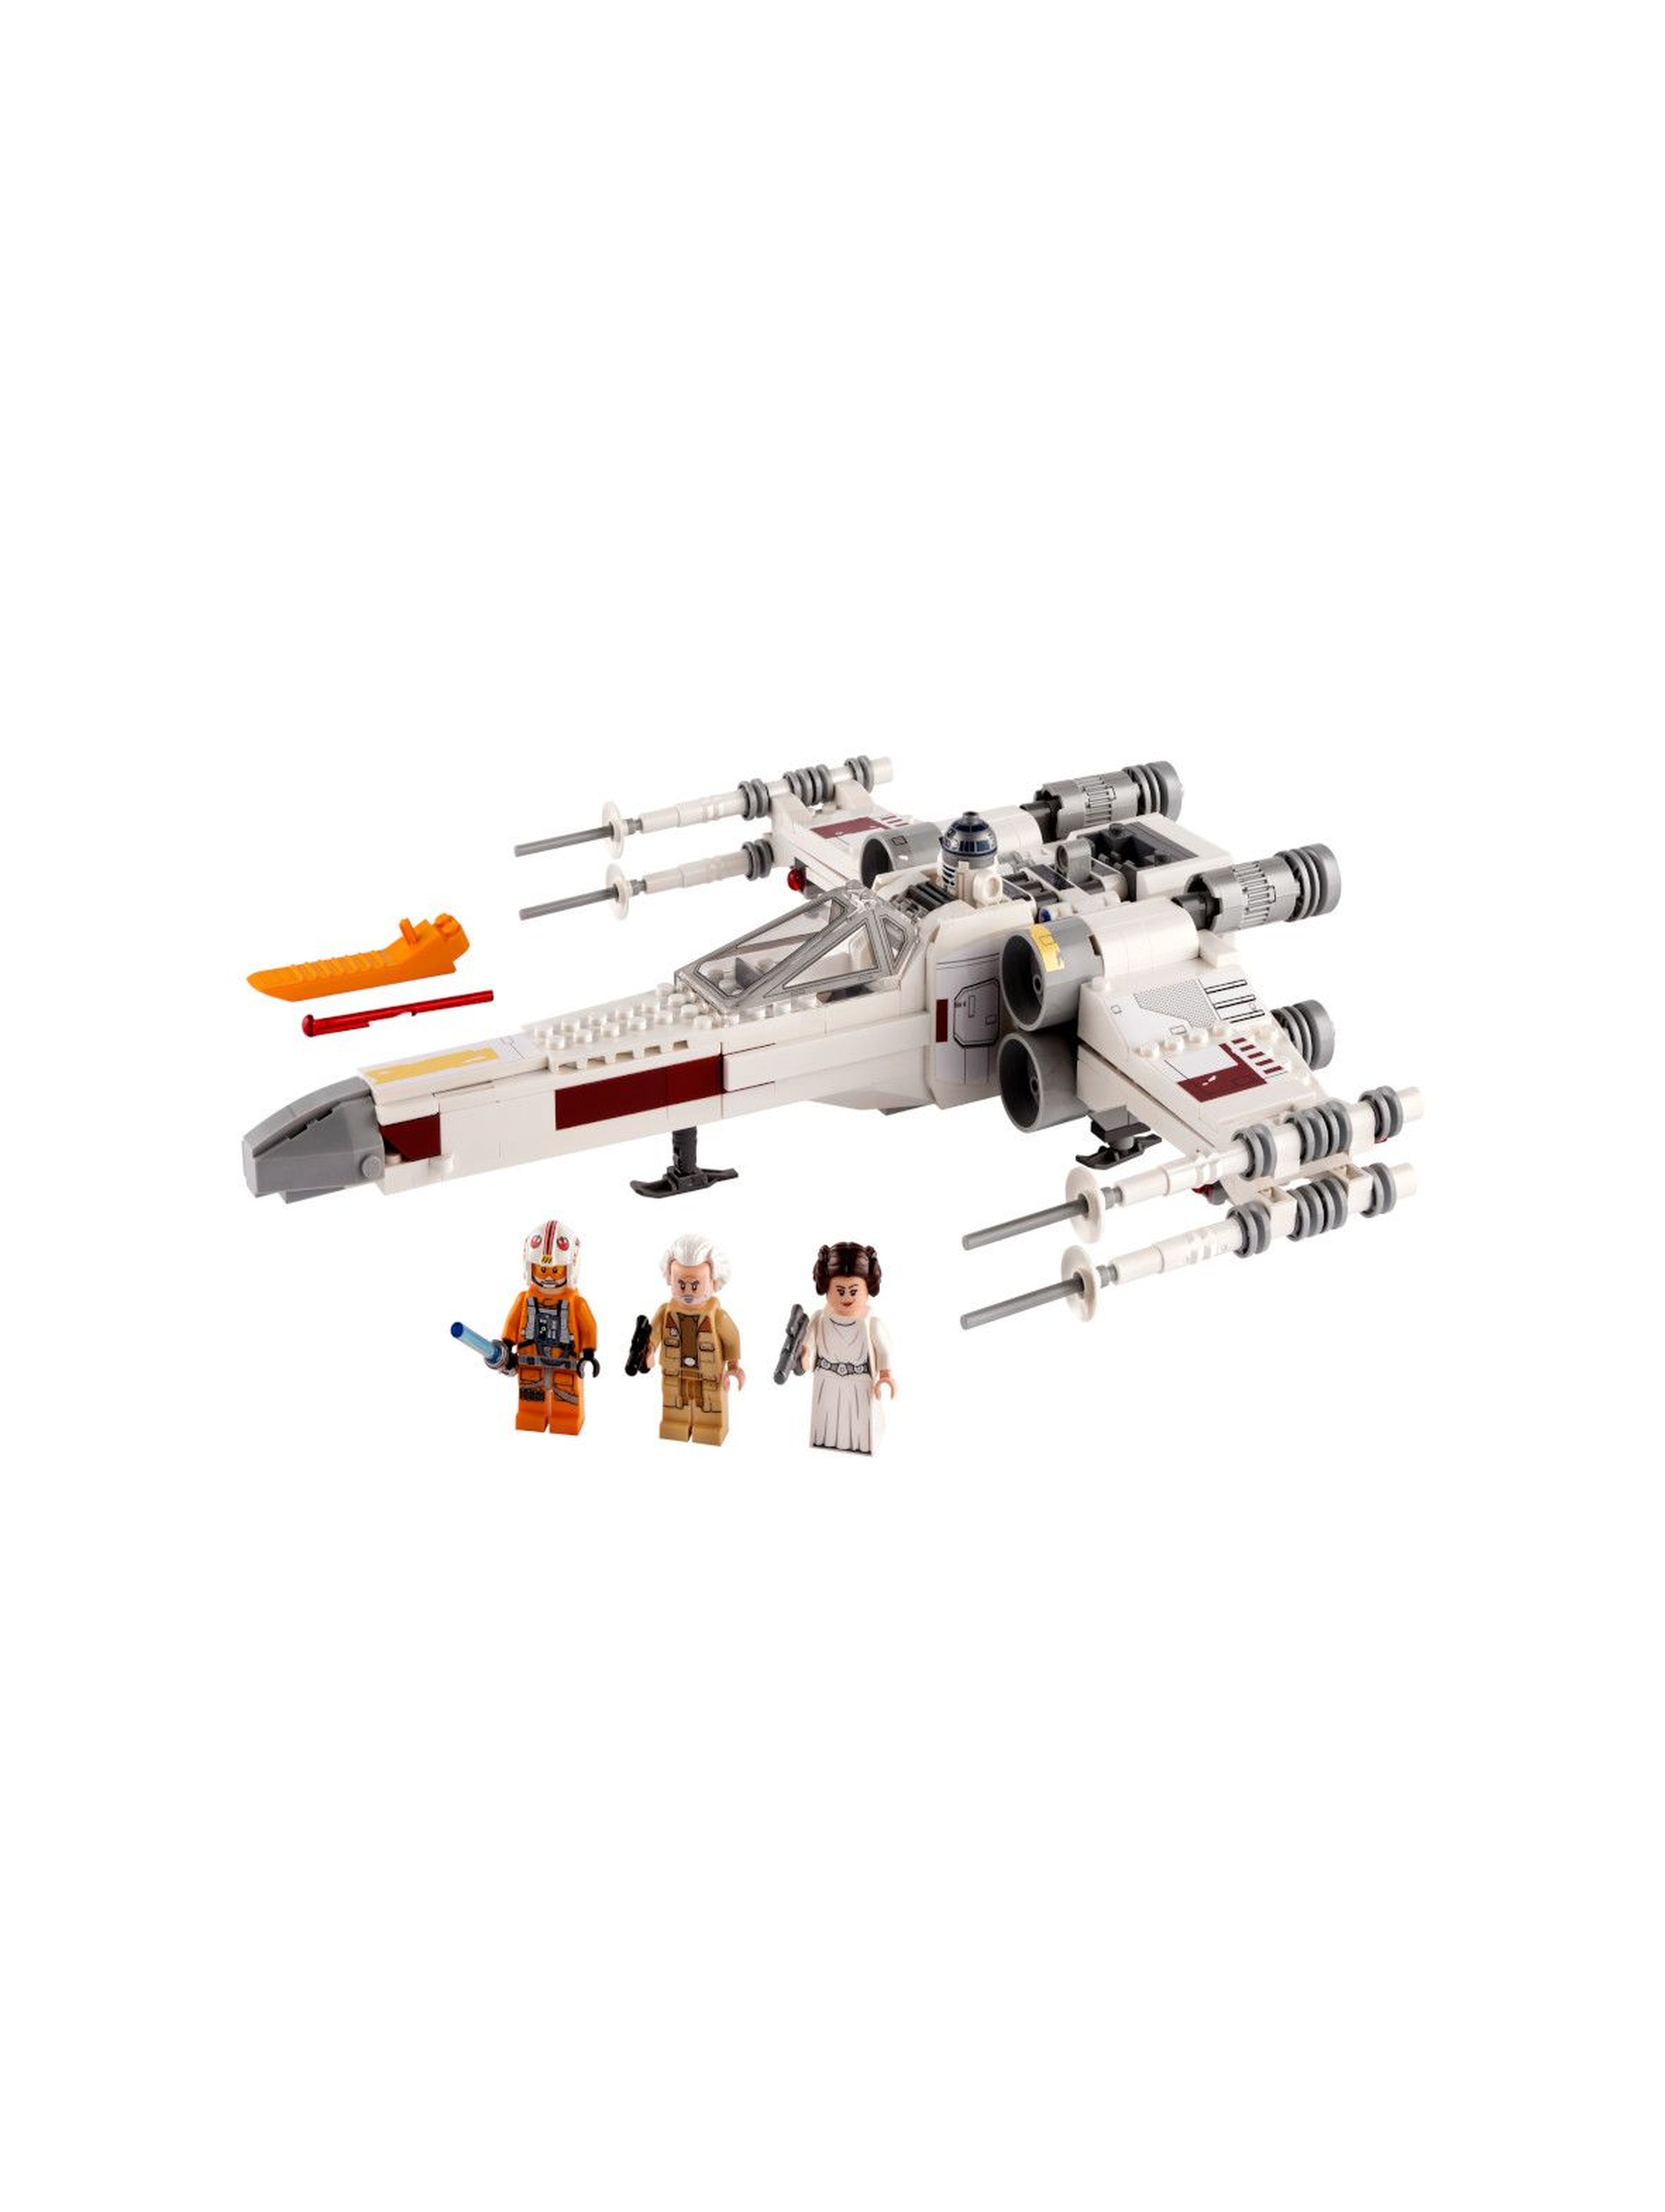 LEGO Star Wars - Myśliwiec X-Wing Luke'a Skywalkera - 474 el